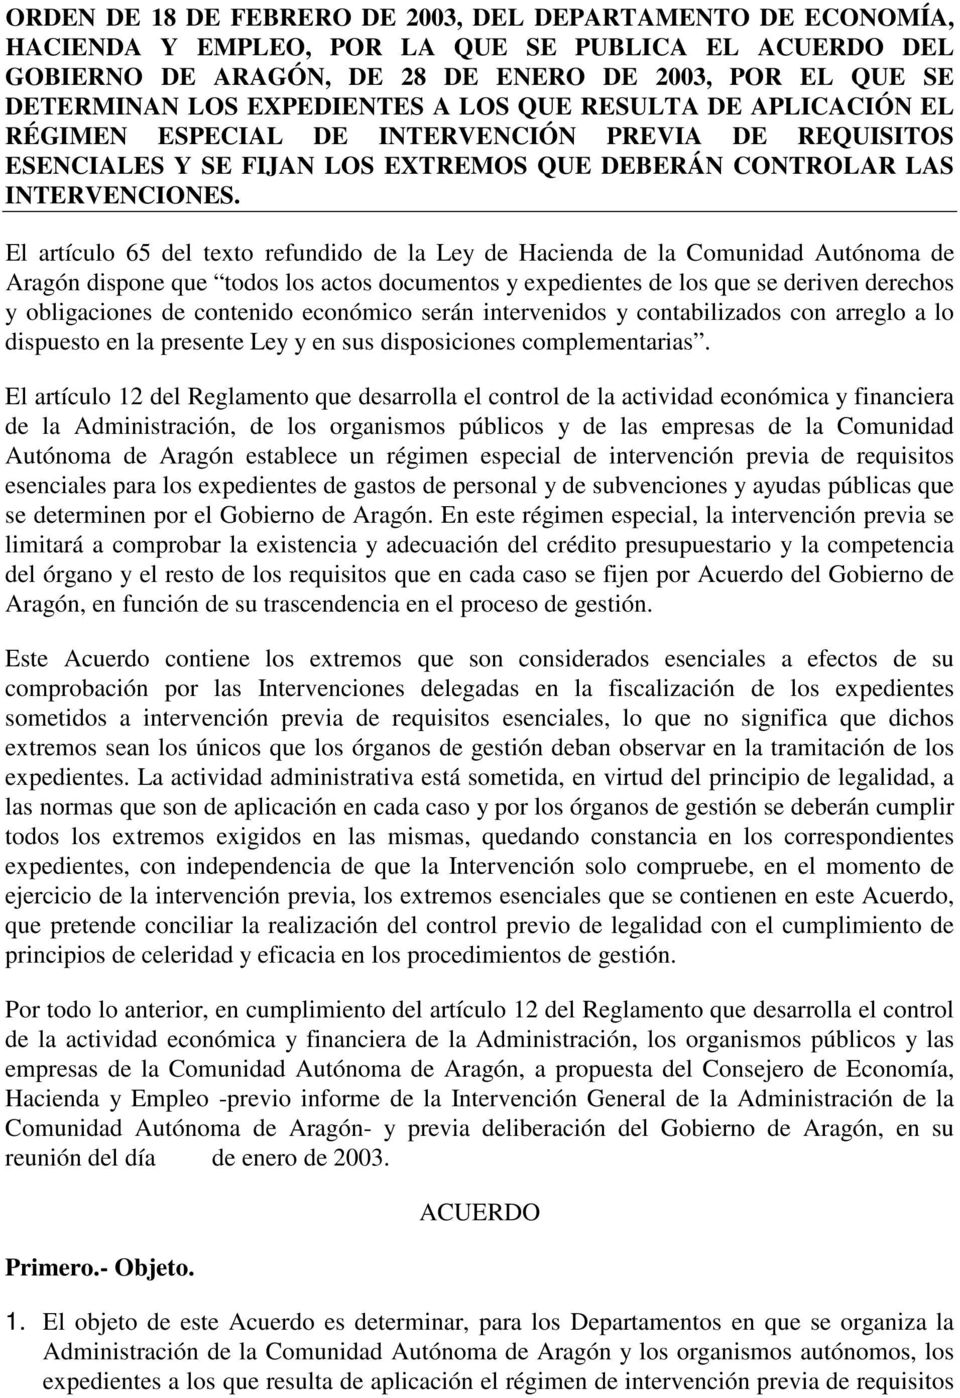 El artículo 65 del texto refundido de la Ley de Hacienda de la Comunidad Autónoma de Aragón dispone que todos los actos documentos y expedientes de los que se deriven derechos y obligaciones de